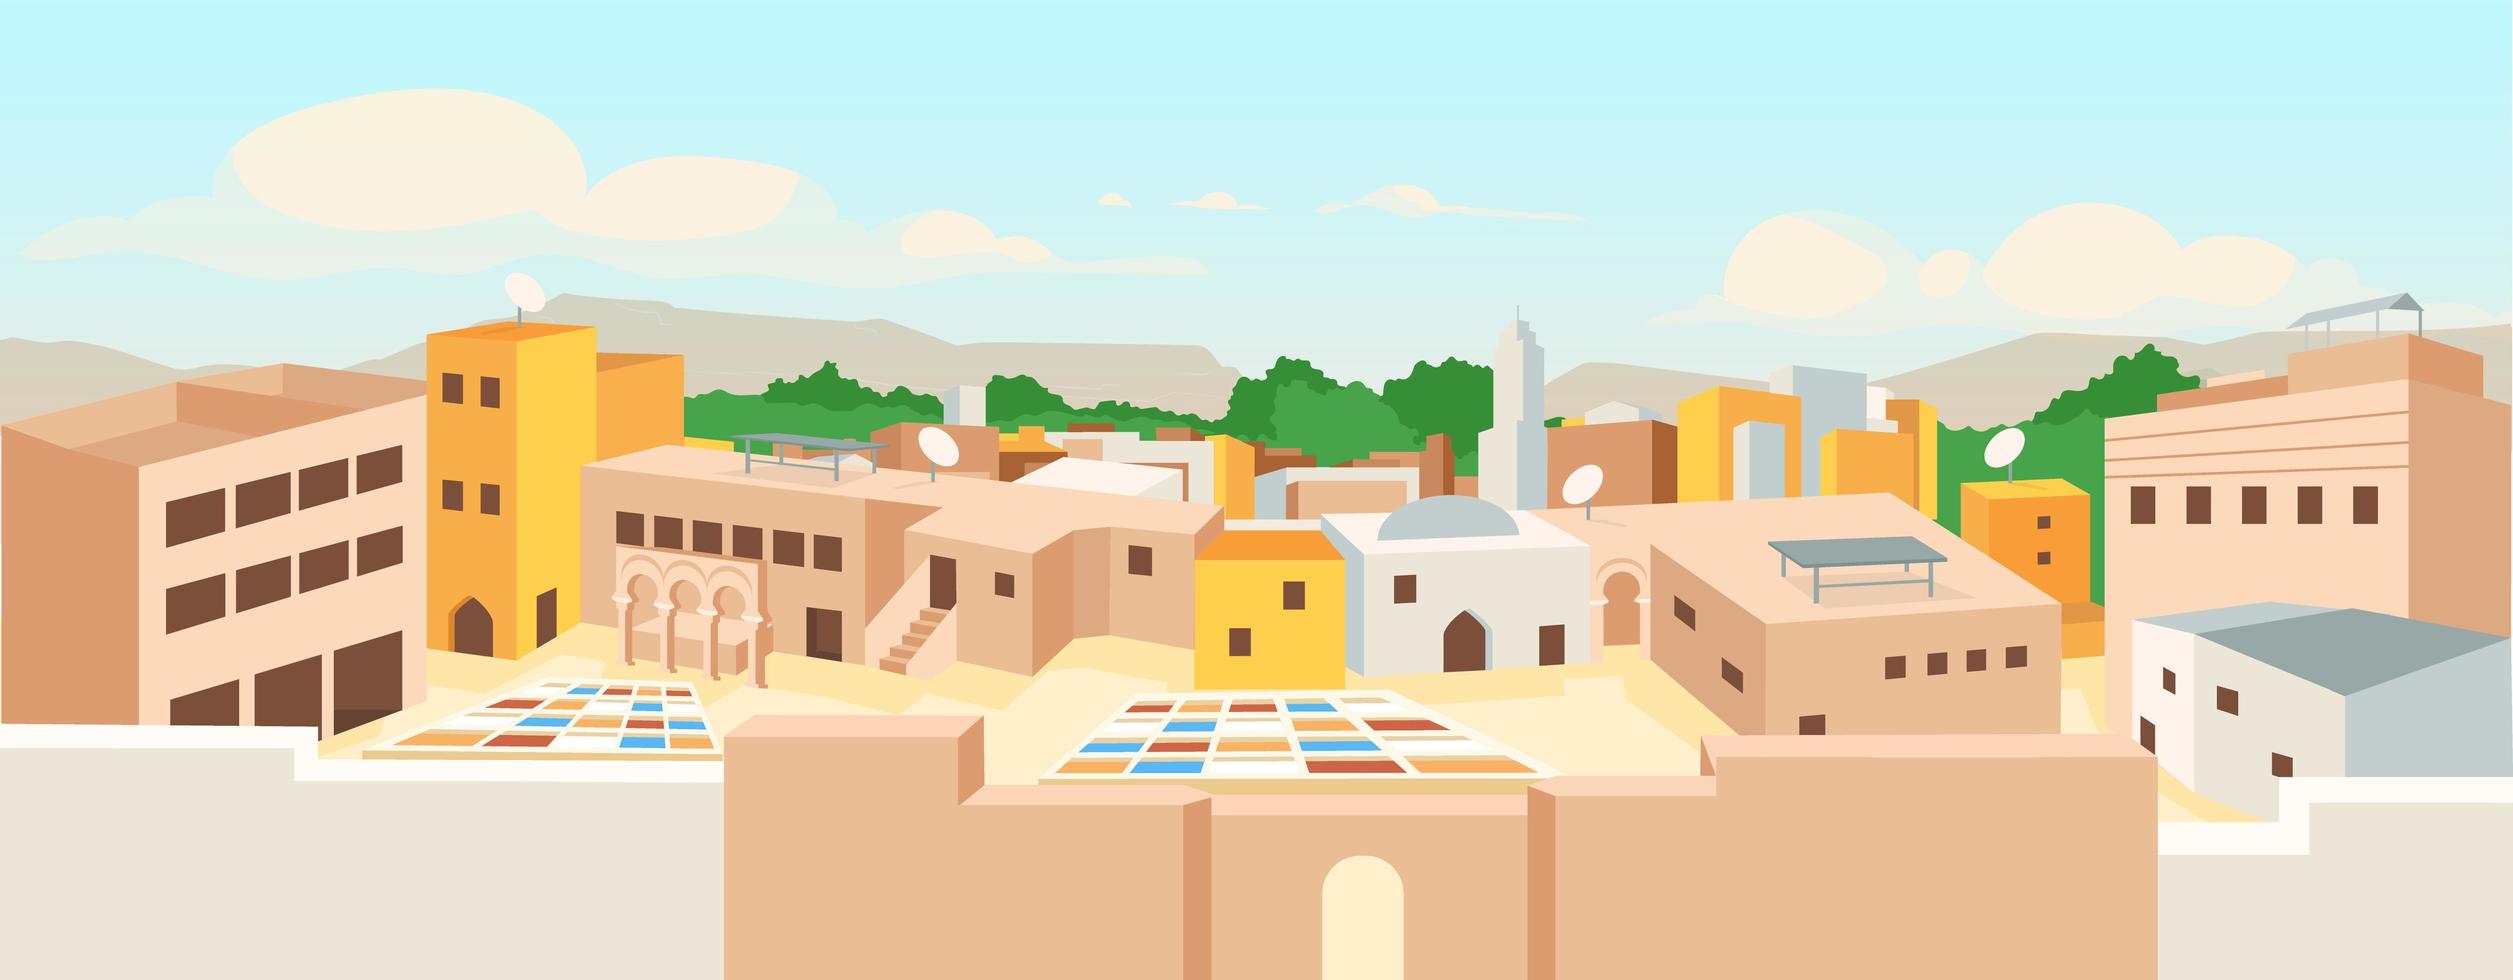 oude Arabische stad egale kleur vectorillustratie vector